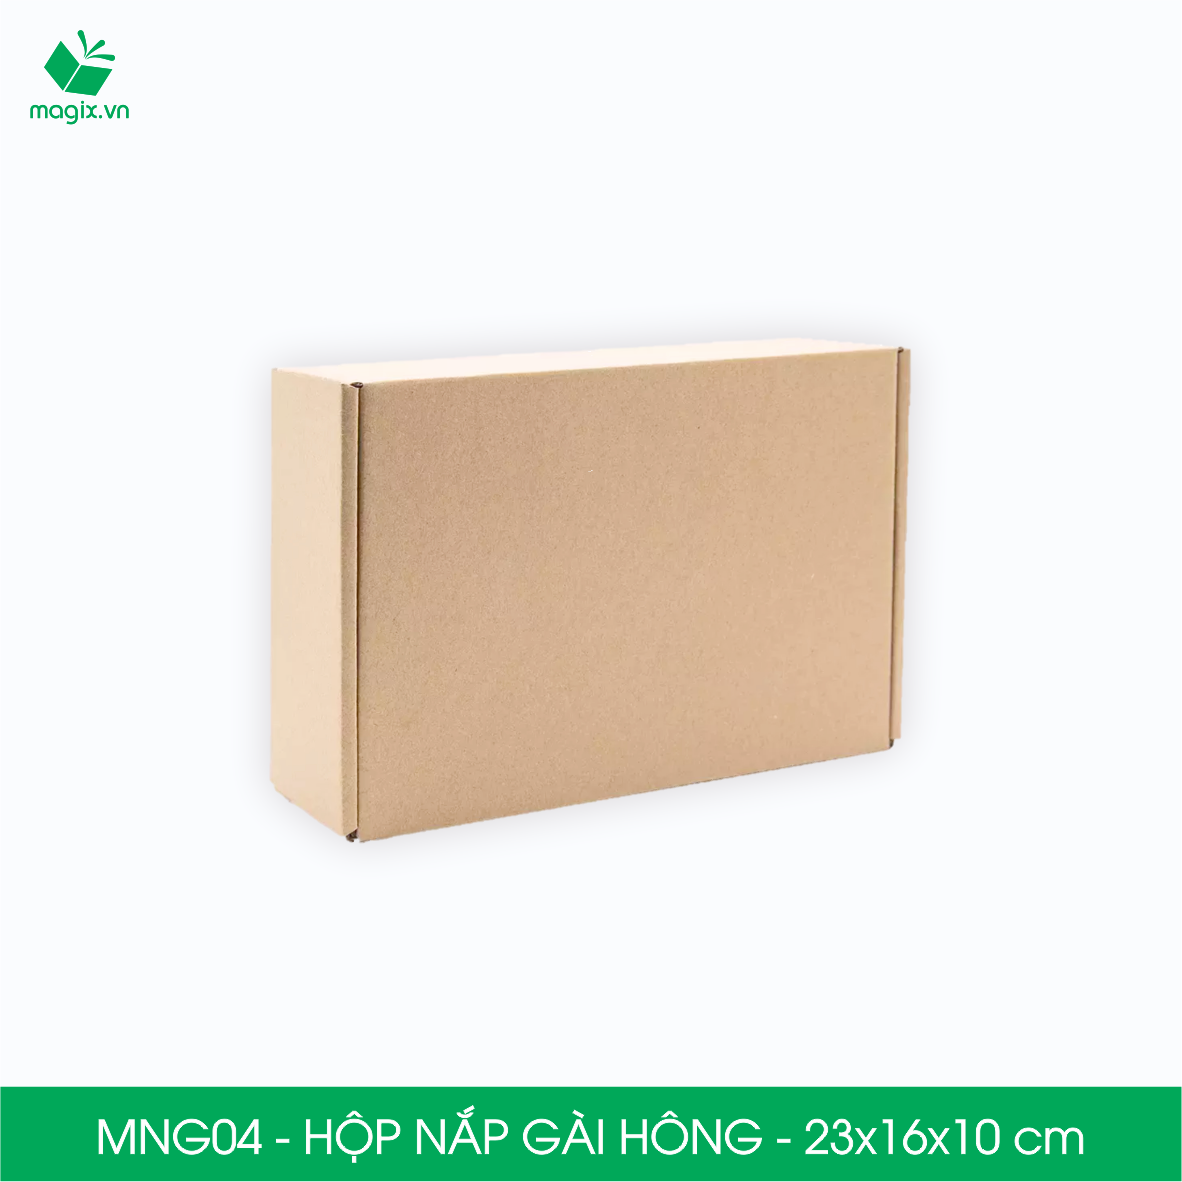 MNG04 - 23x16x10cm - Combo 60 hộp nắp gài hông - Thùng carton đóng hàng